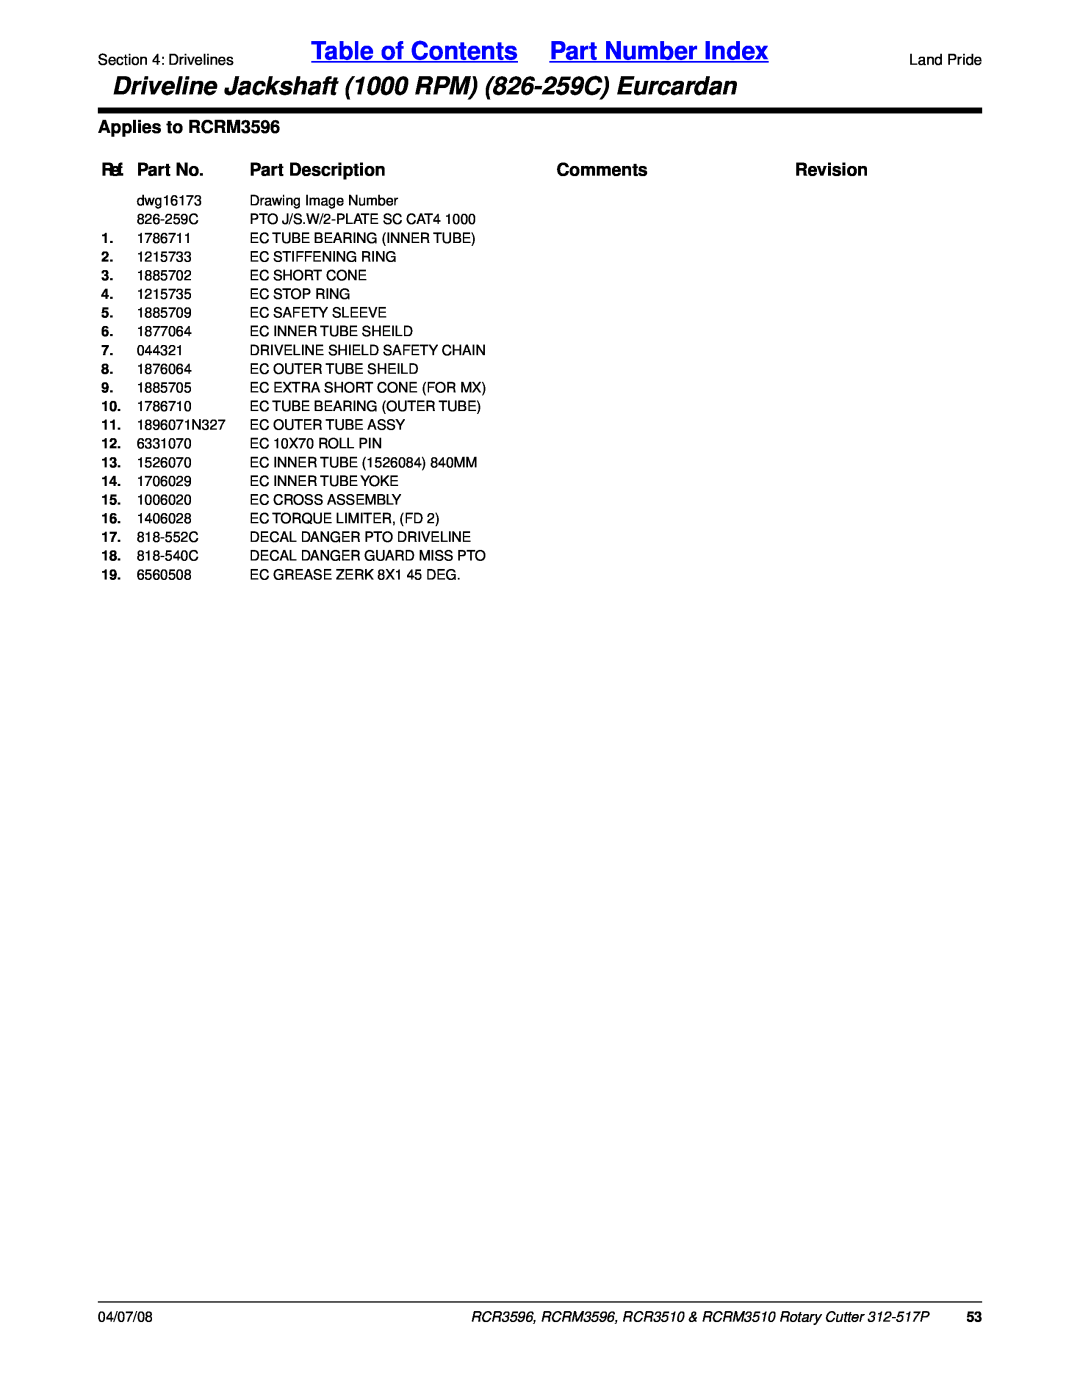 Land Pride RCRM3510 Table of Contents Part Number Index, Driveline Jackshaft 1000 RPM 826-259CEurcardan, Ref. Part No 